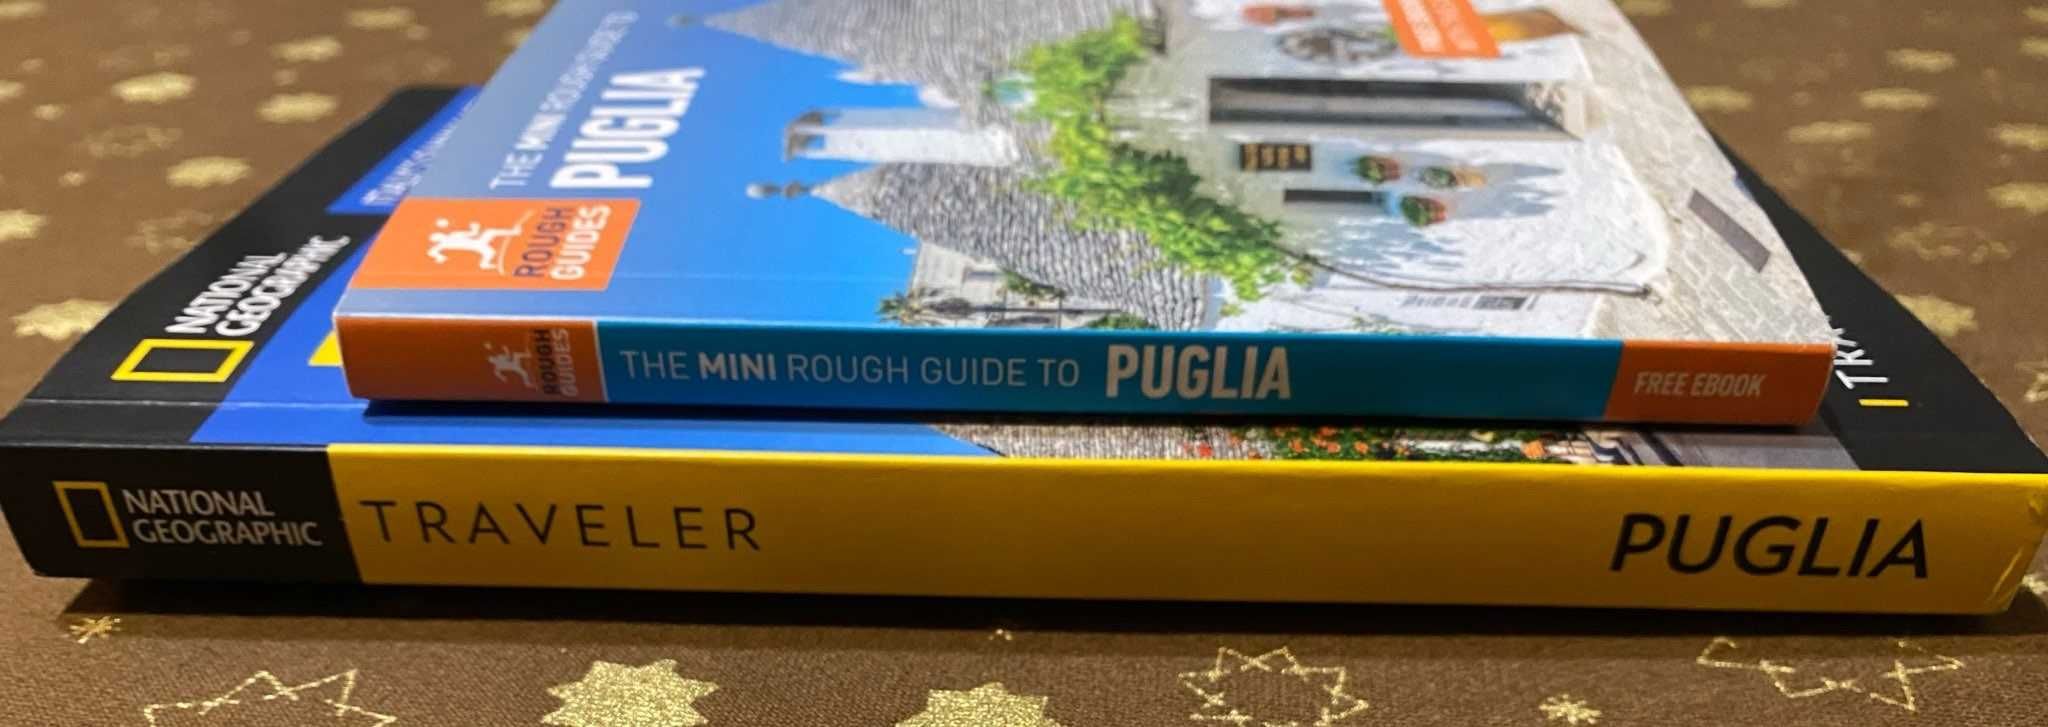 2х Пътеводители на област Пулия (PUGLIA) /южна Италия / Английски език